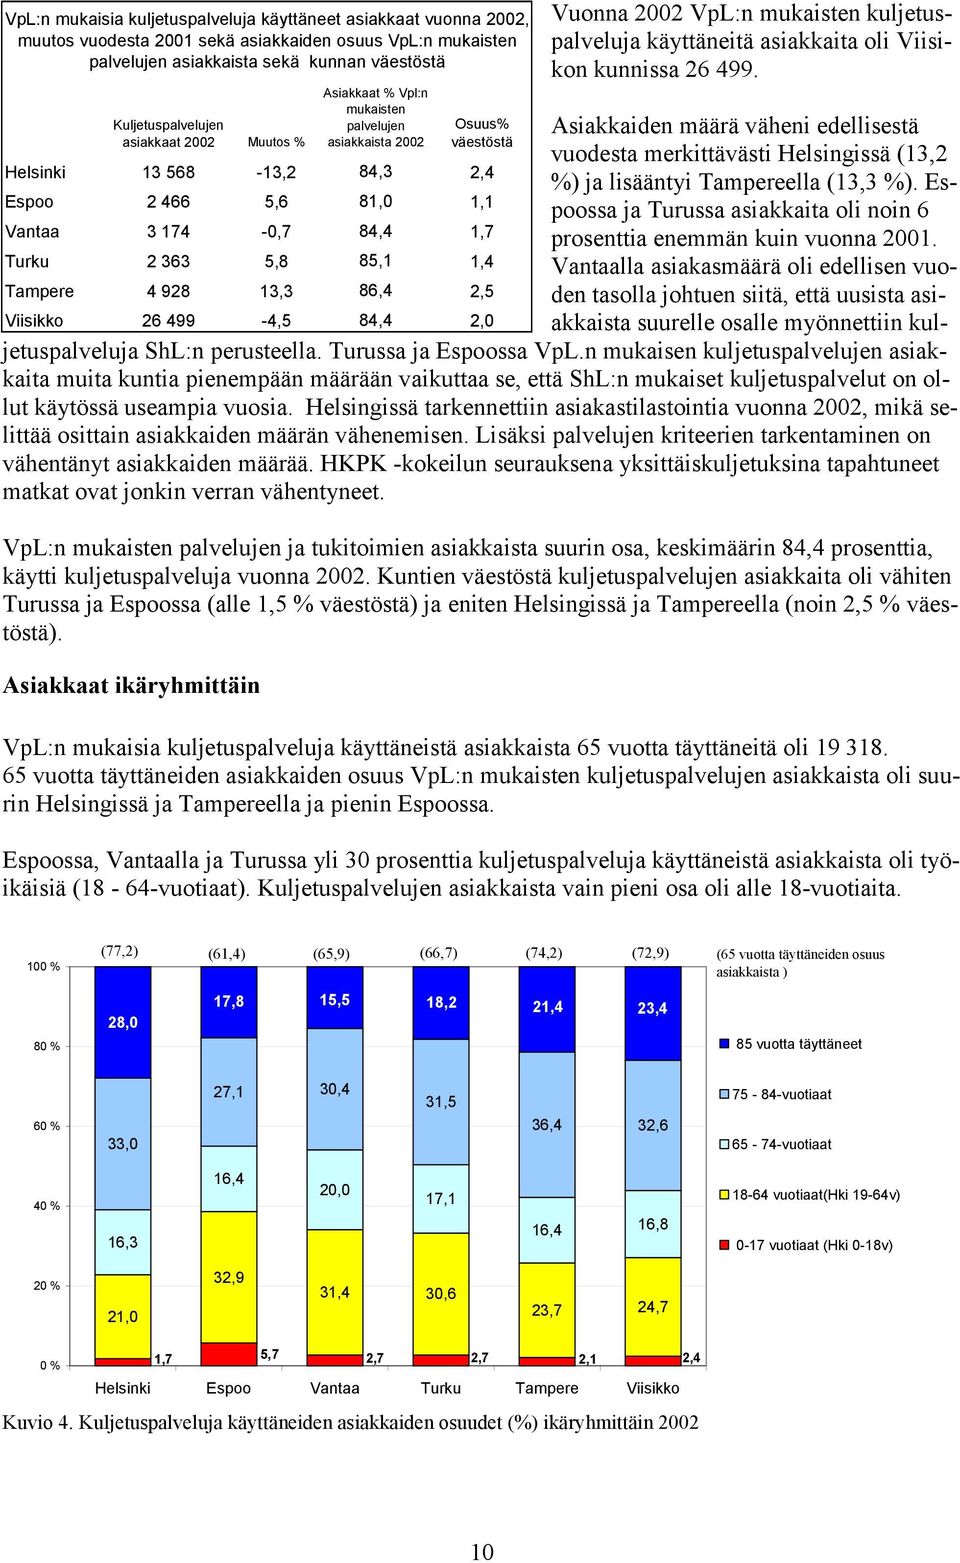 Asiakkaiden määrä väheni edellisestä vuodesta merkittävästi Helsingissä (13,2 %) ja lisääntyi Tampereella (13,3 %). Espoossa ja Turussa asiakkaita oli noin 6 prosenttia enemmän kuin vuonna 2001.